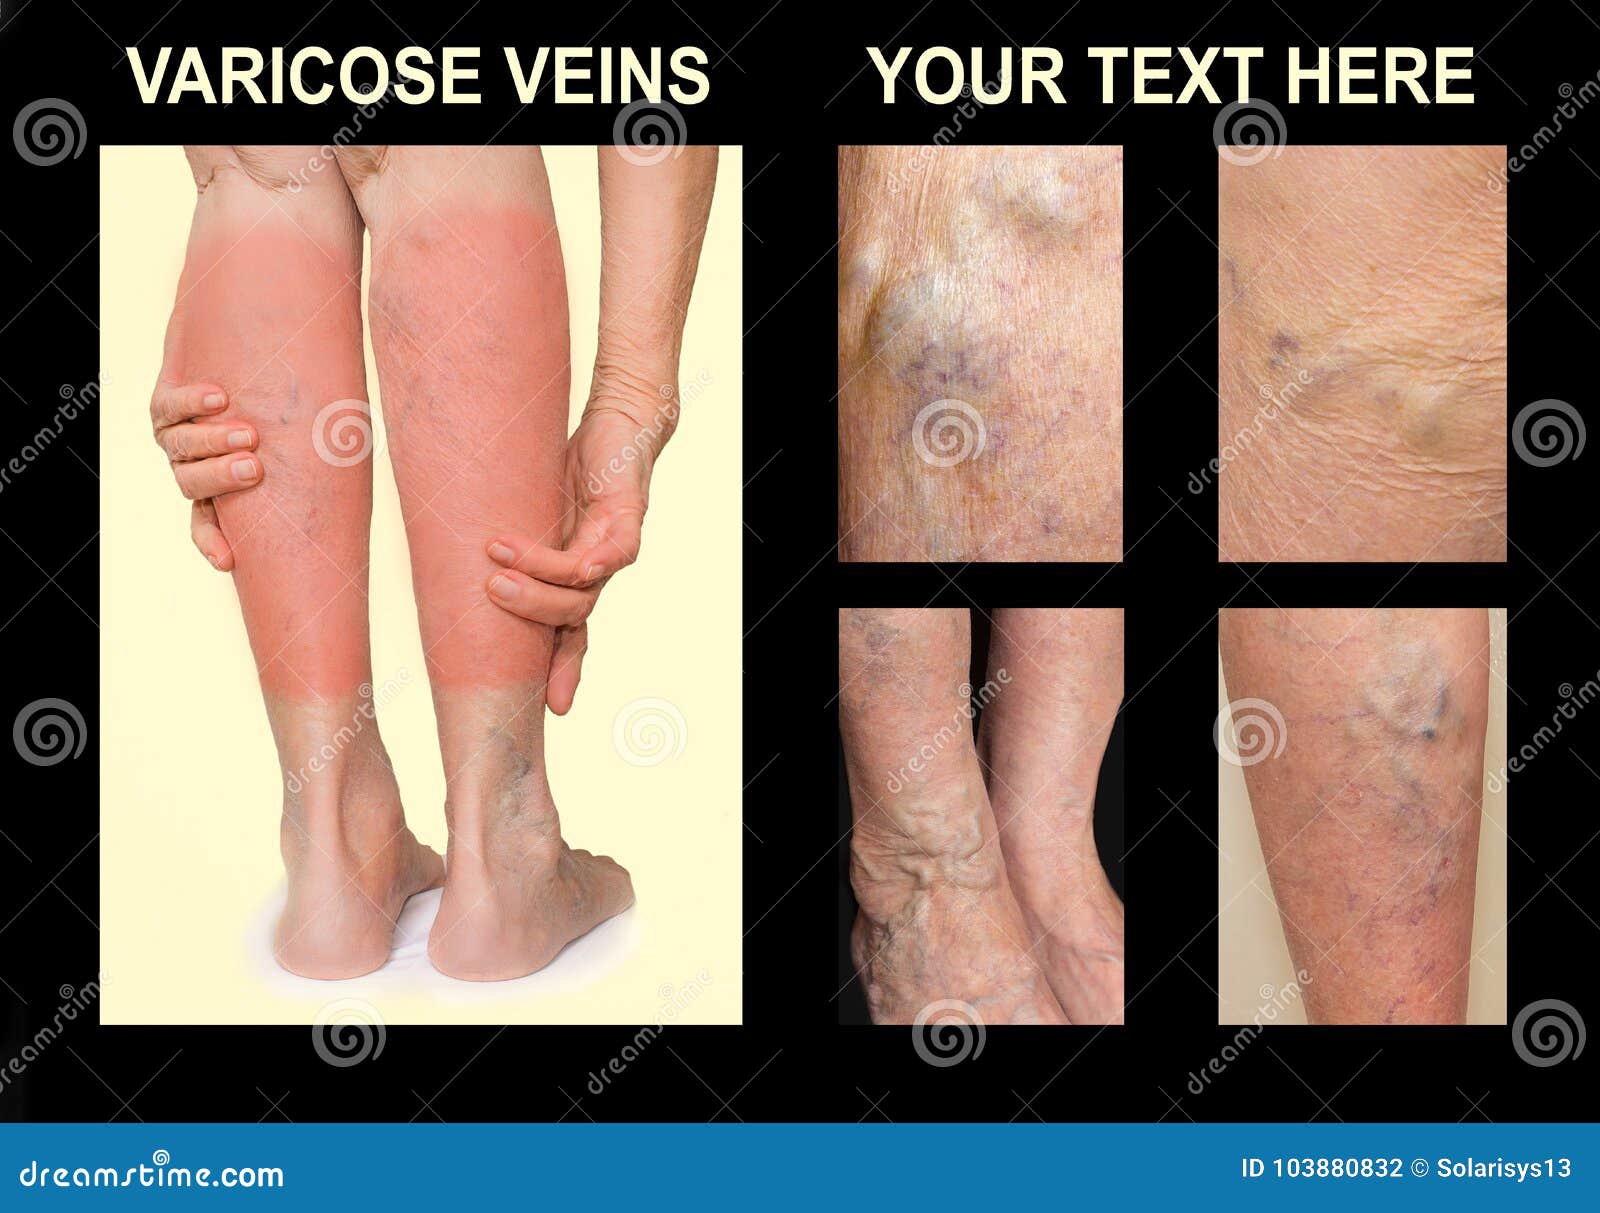 Recomandări după intervenția venelor varicoase - Dupa operaie varicoza picior